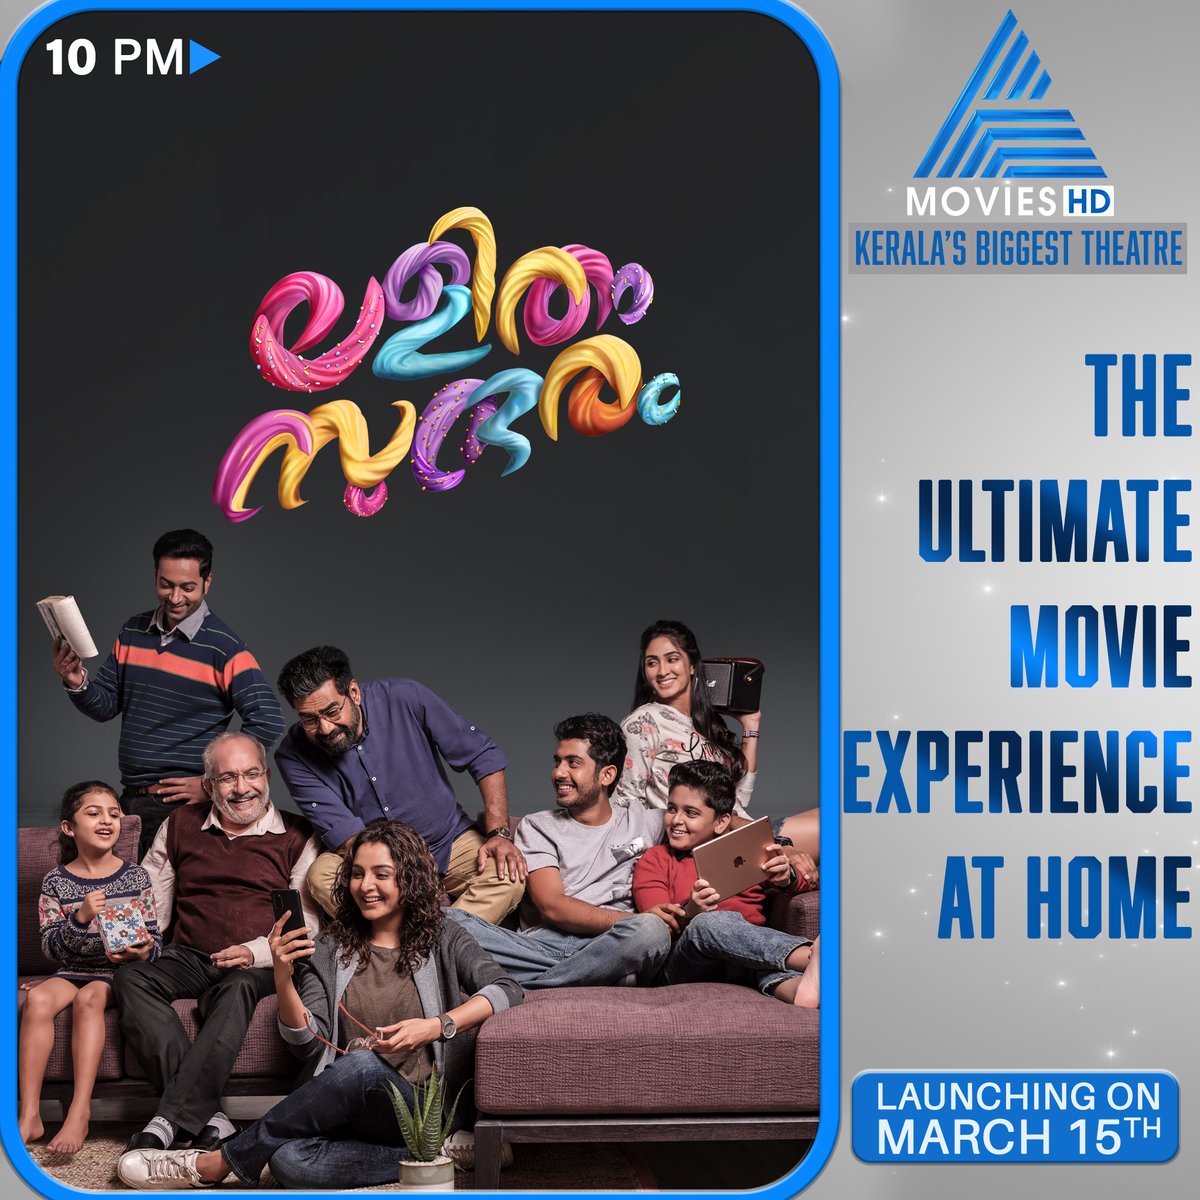 കുടുംബാംഗങ്ങളോടൊപ്പം രസിക്കാനും ആസ്വദിക്കാനും ഇനി ലളിതം സുന്ദരം ..

Lalitham Sundaram || Tonight at 10 pm || Asianet Movies HD

#LalithamSundaram  #ManjuWarrier #BijuMenon #AsianetMoviesHD #SaijuKurup #AnuMohan #DeeptiSathi